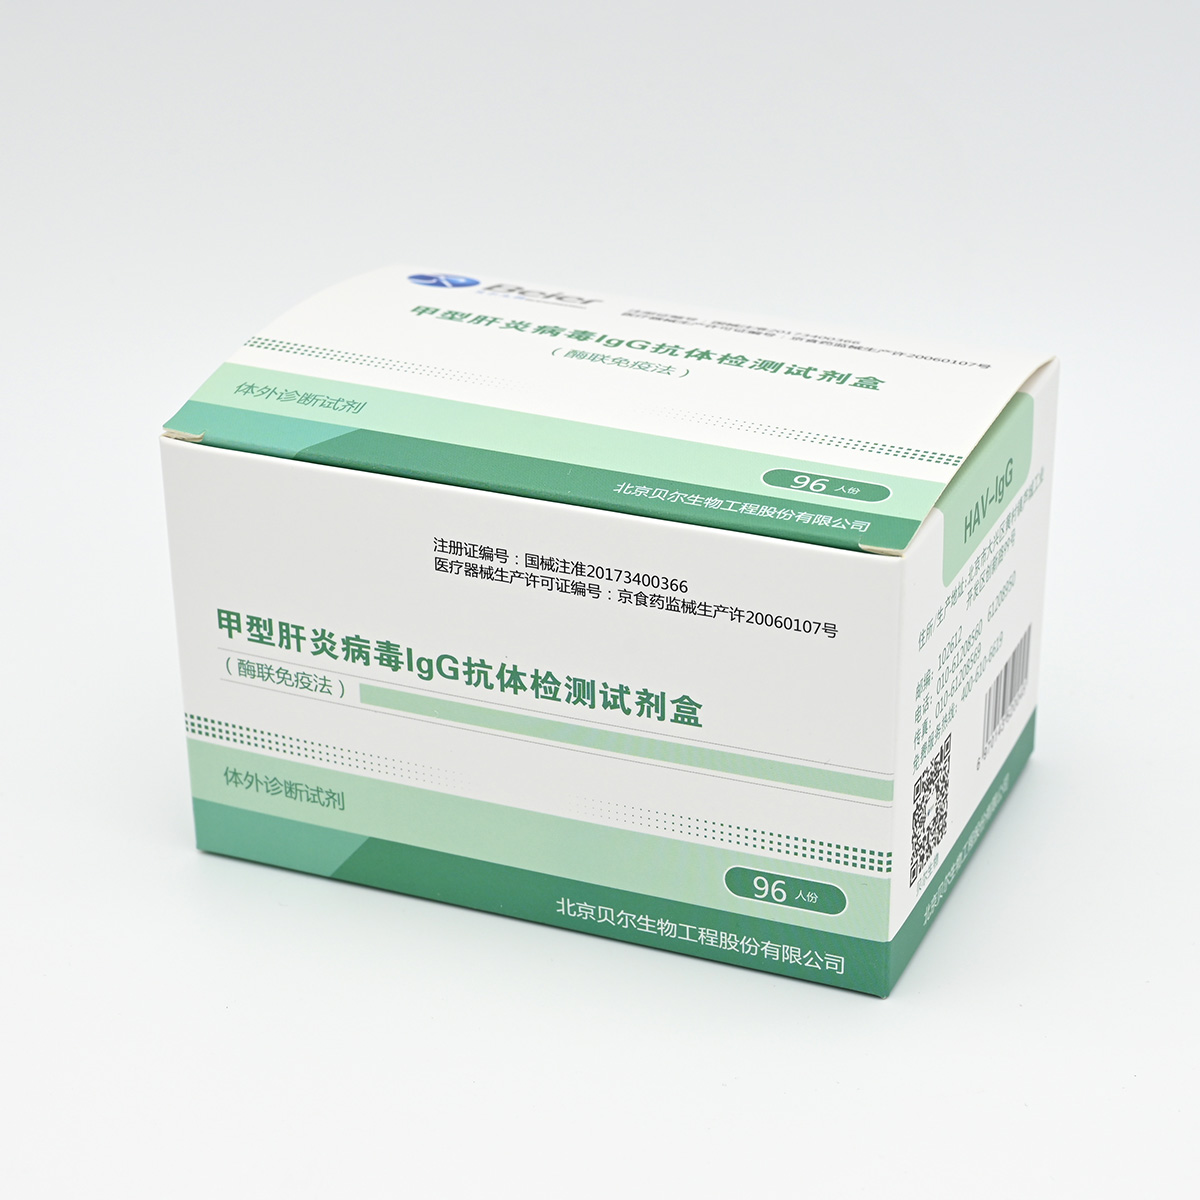 【贝尔】甲型肝炎病毒IgG抗体检测试剂盒(HAV-IgG)(酶联免疫法)